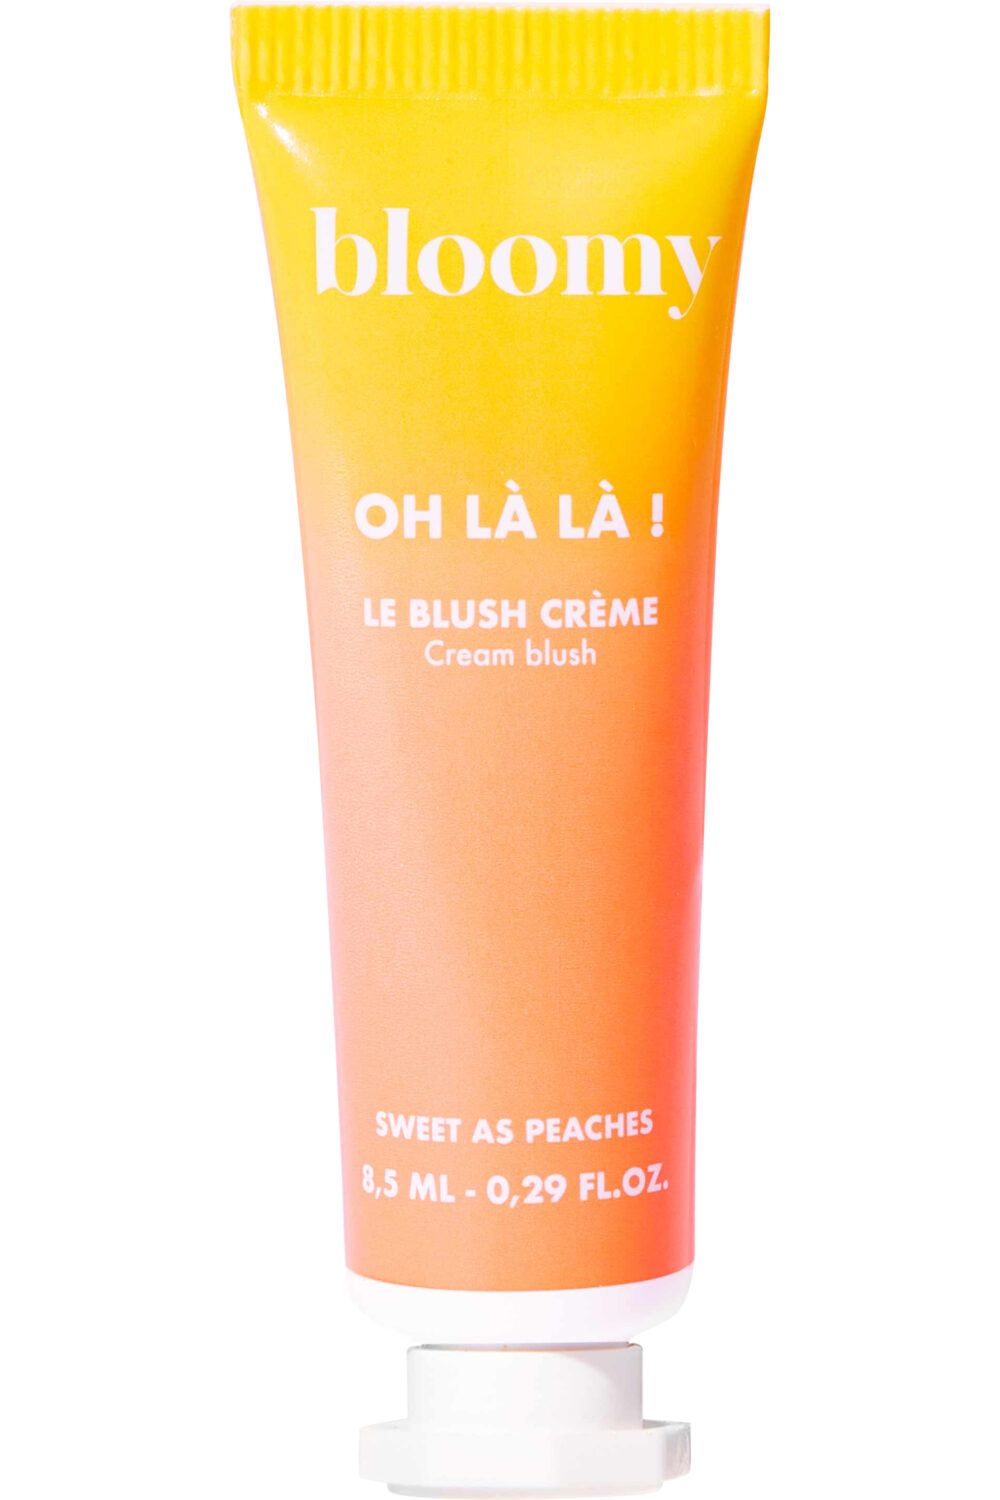 Bloomy - Blush crème Oh là là ! Corail